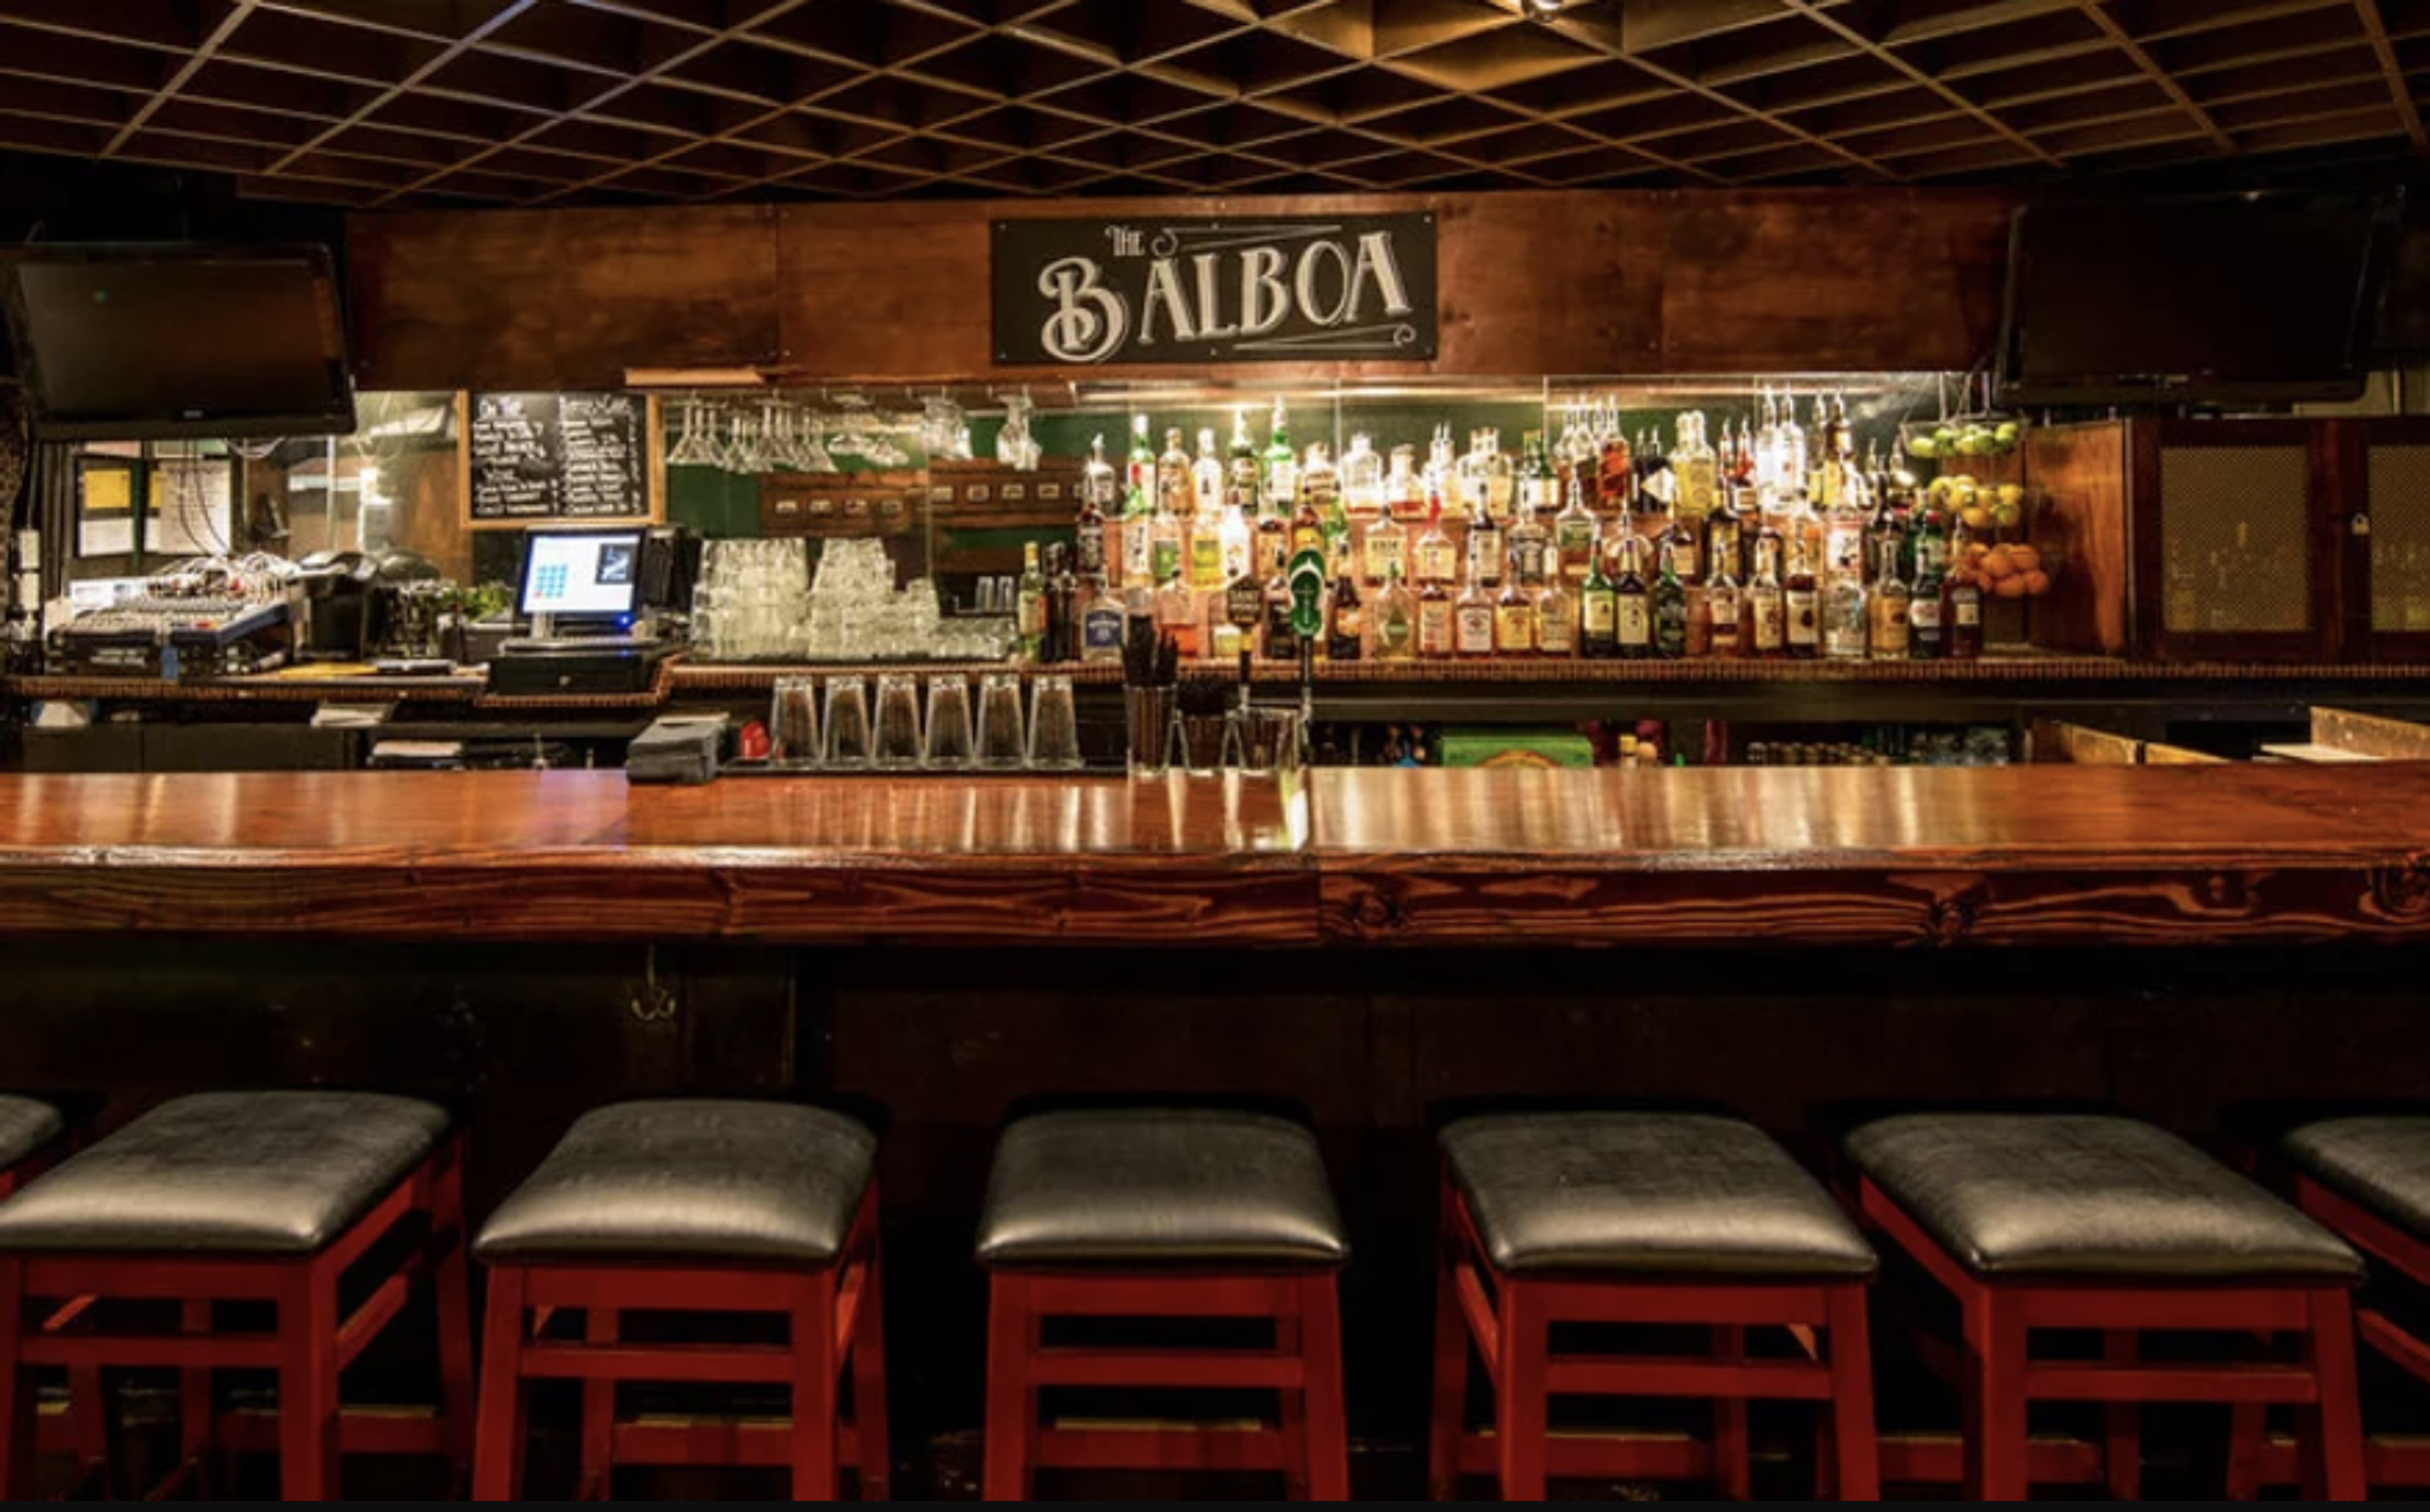 The Balboa bar